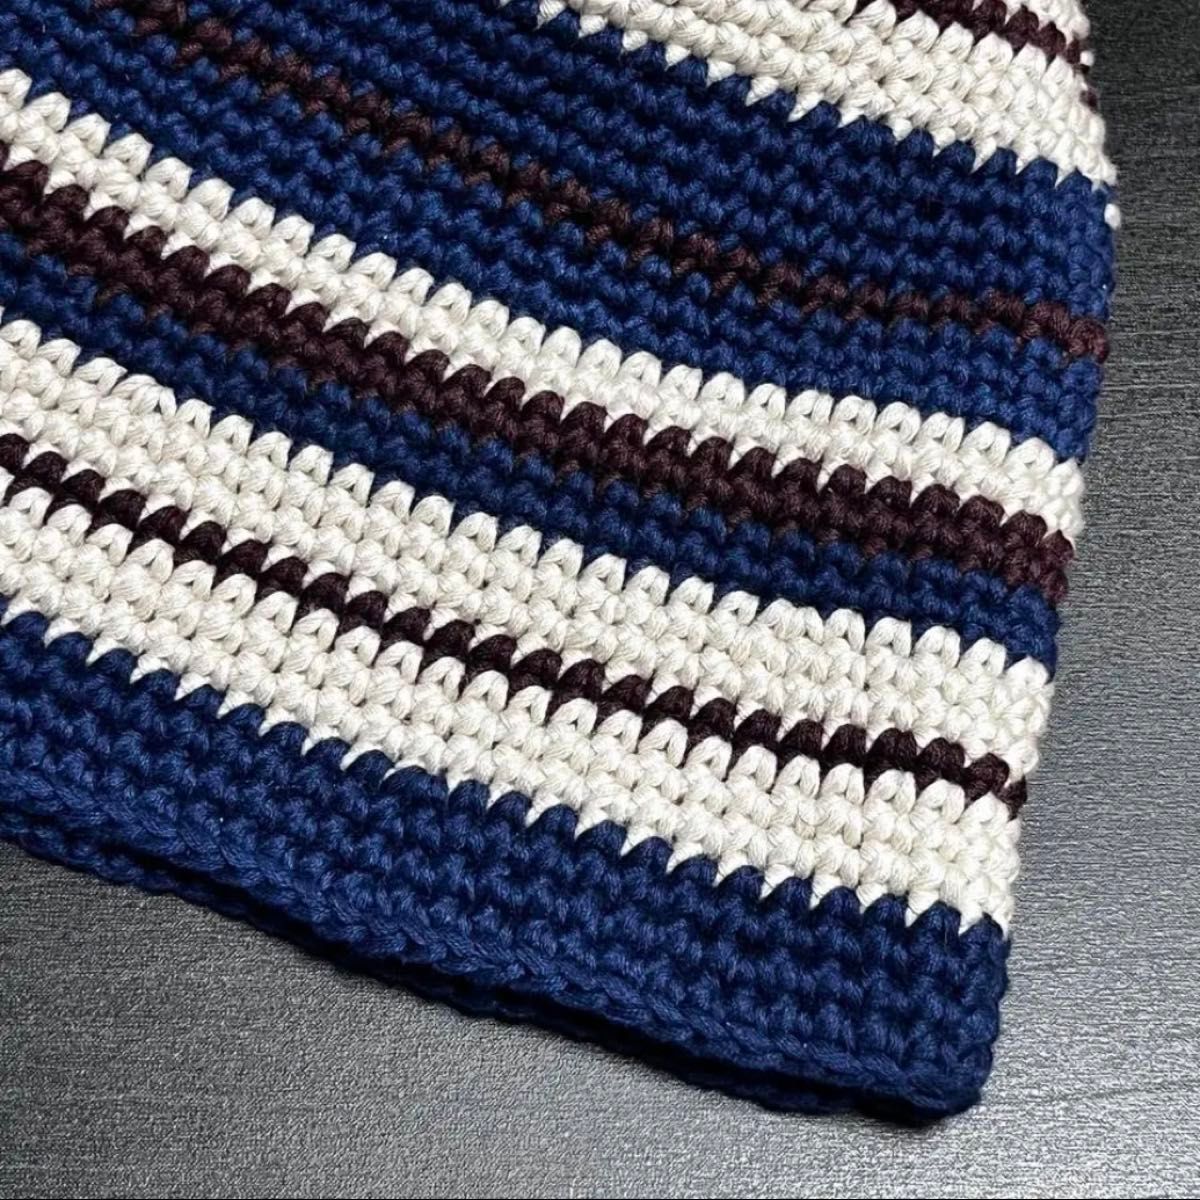 バケットハット かぎ針編み 手編みのコットン  ニット帽 手編み ハンドメイド handmade